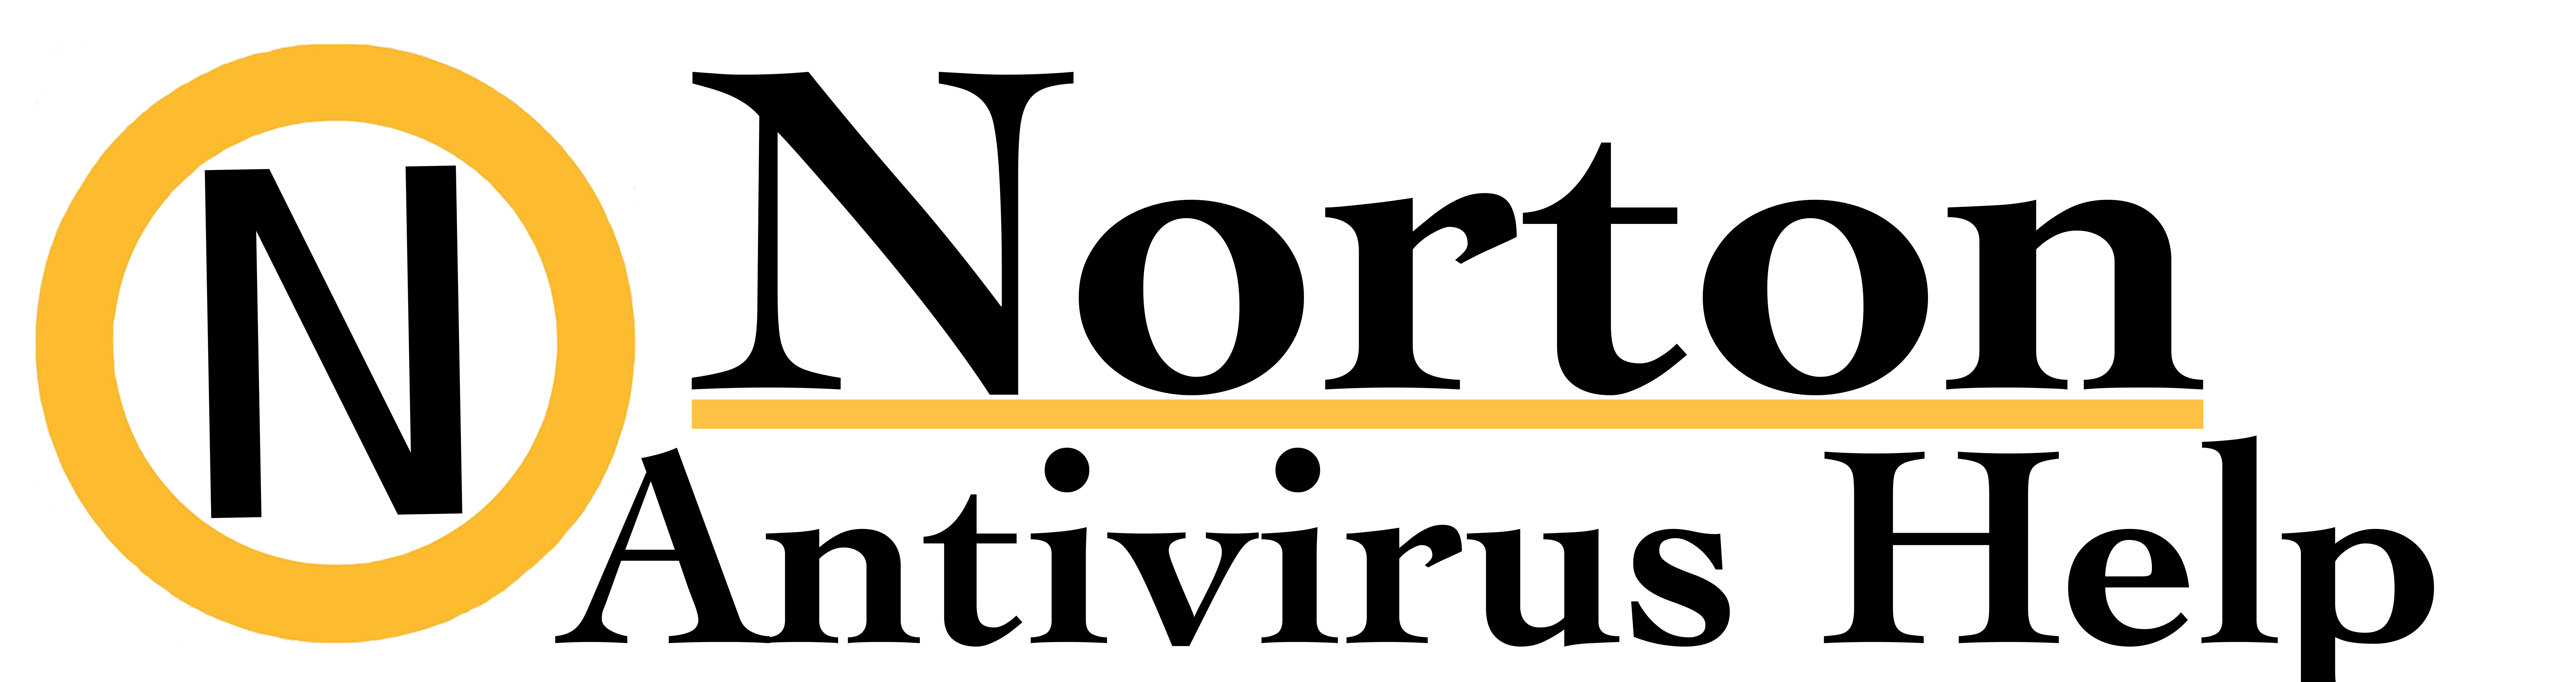 Norton Antivirus Error support solve security problems